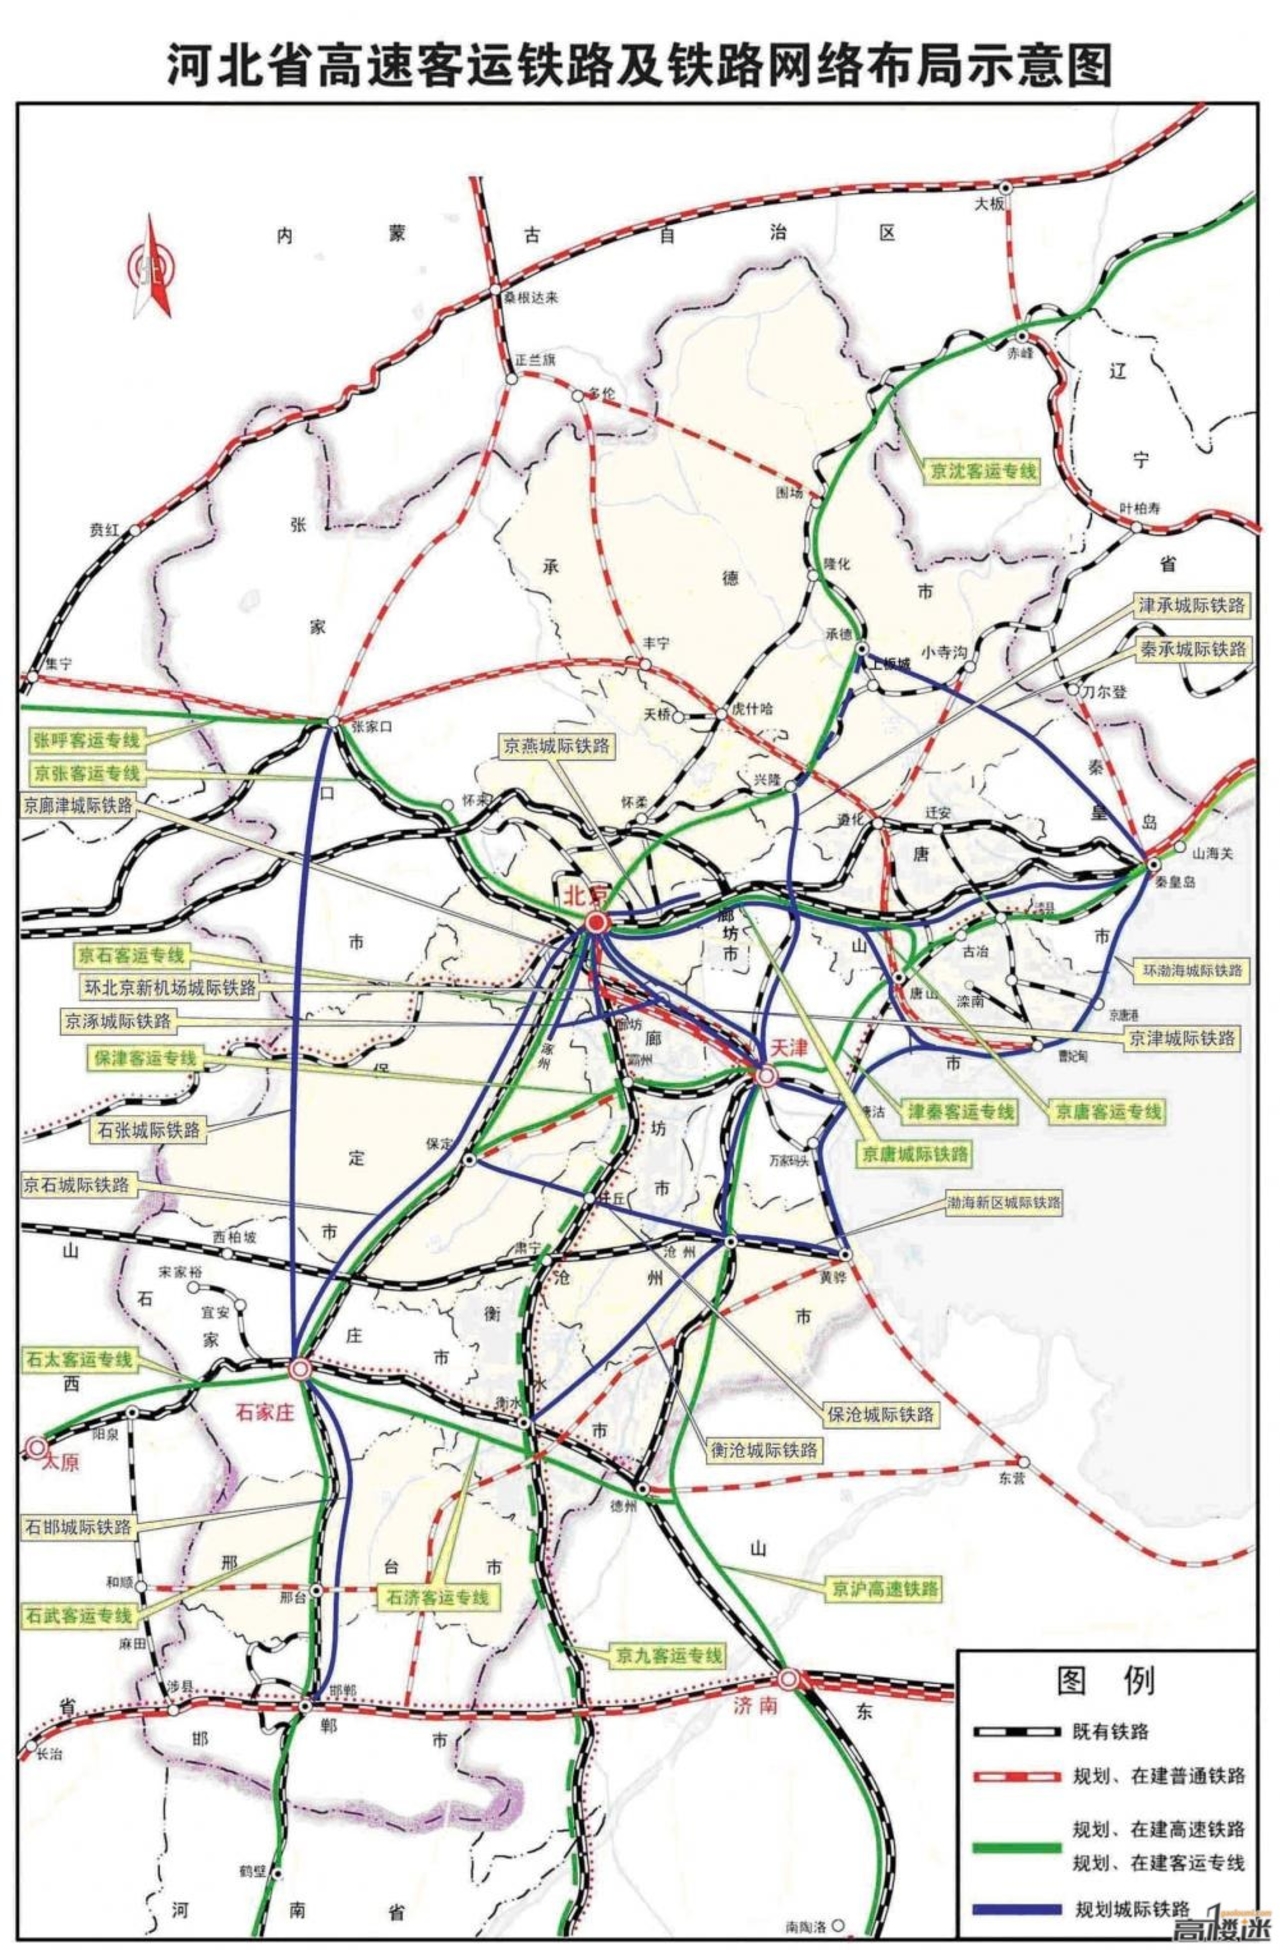 方舆 - 交通地理 - 尼日利亚铁路网及铁路规划意图（Illustrator制作） - Powered by phpwind